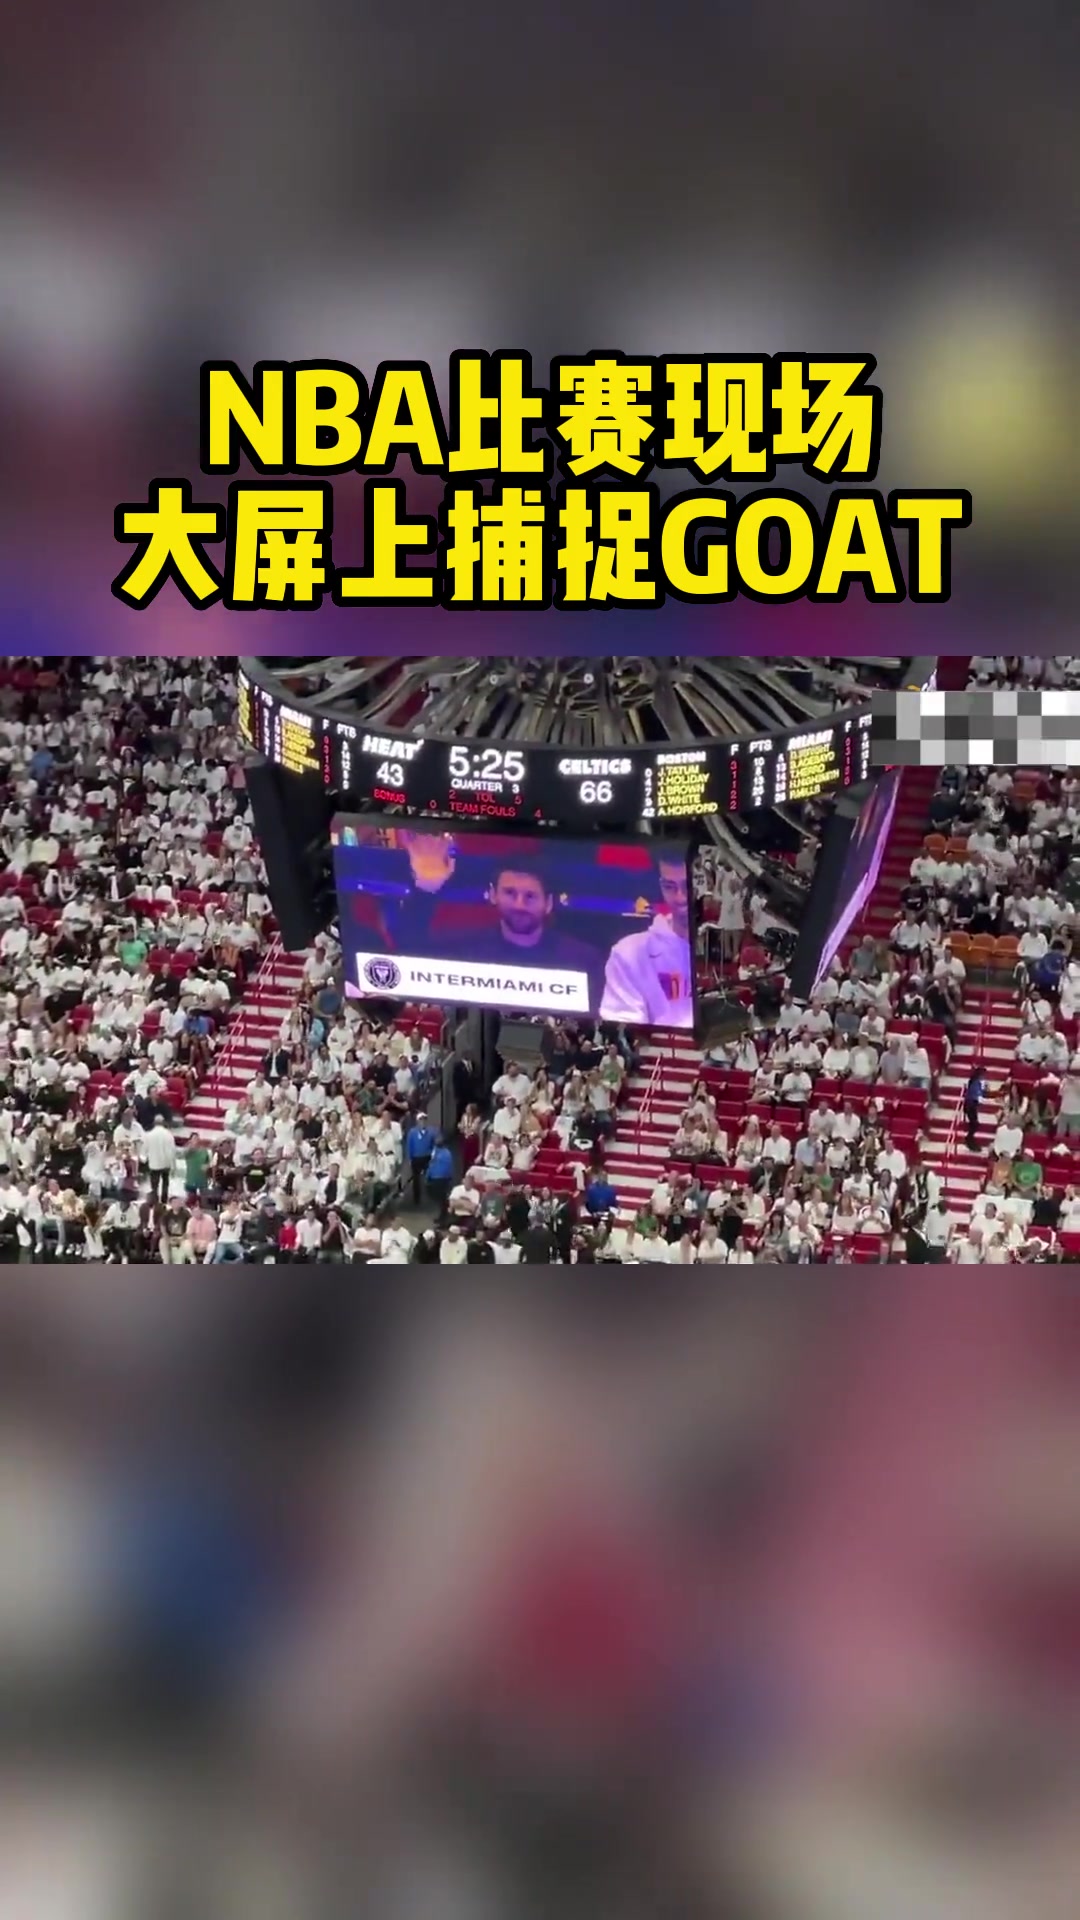 NBA比赛现场大屏上捕捉GOAT，梅西微笑回应球迷掌声